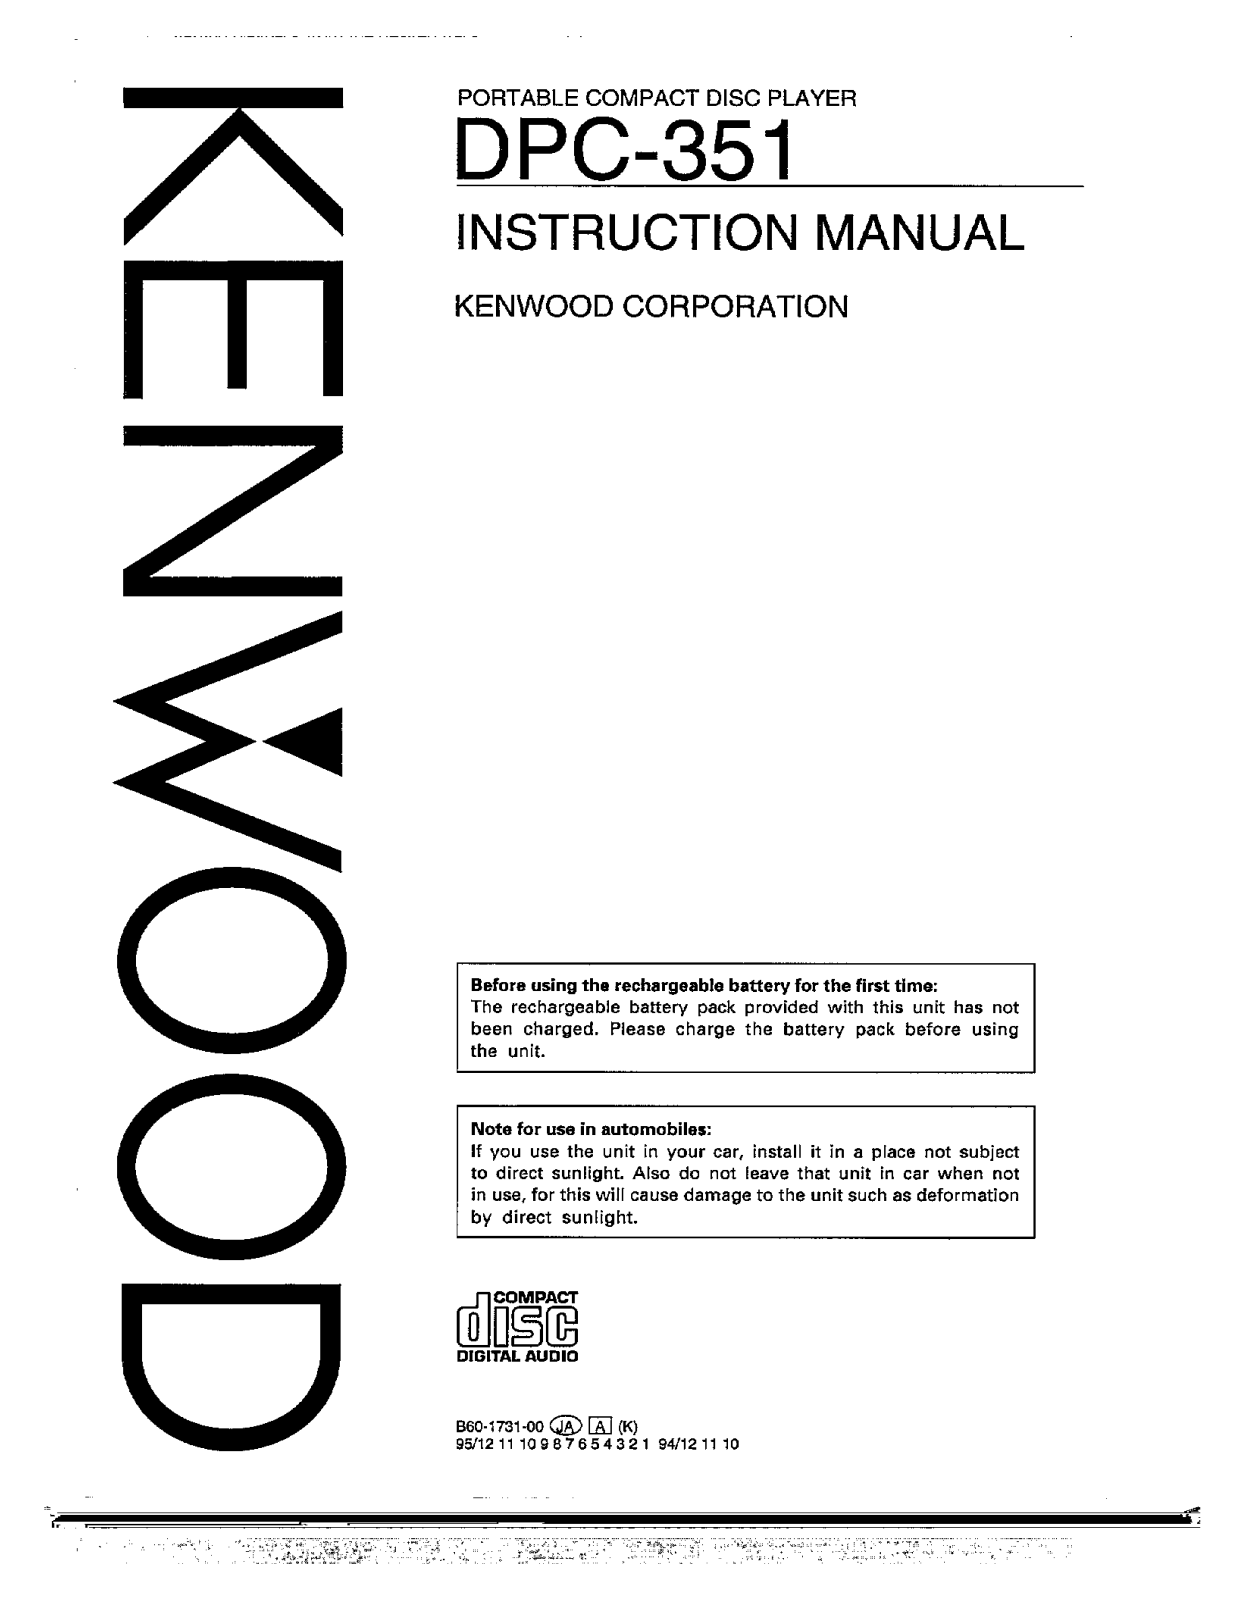 Kenwood DPC-351 Owner's Manual